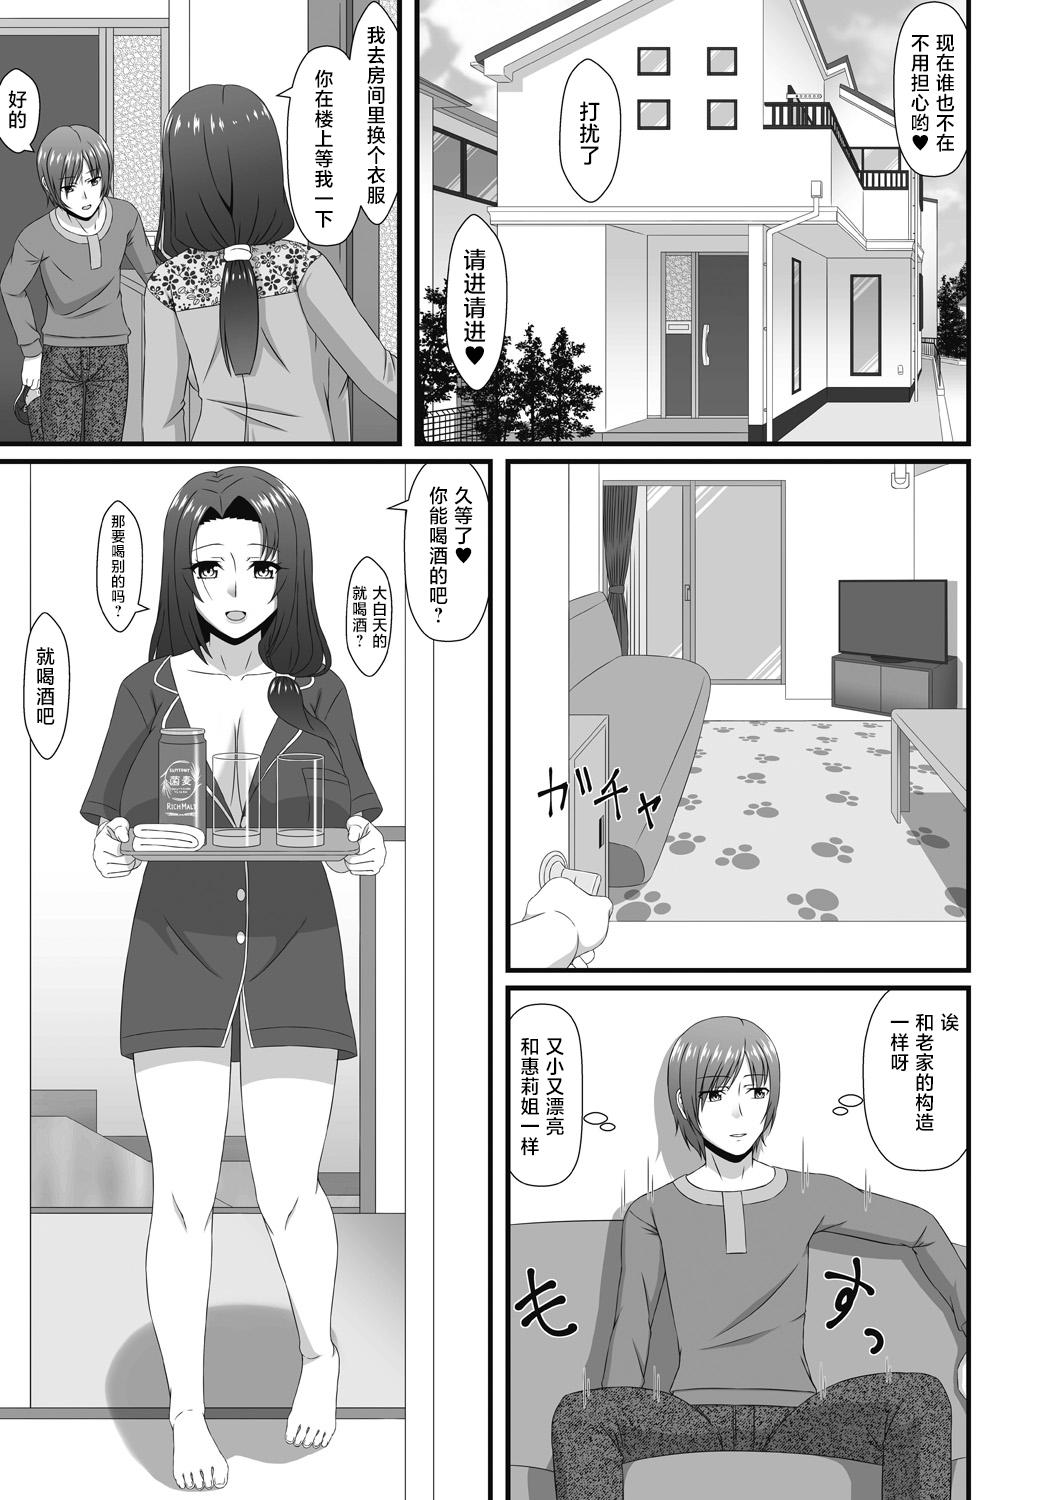 Suck Mukashi Asonte Aketa Ko ga Ikemen ni Natteita node... - Original Grande - Page 3